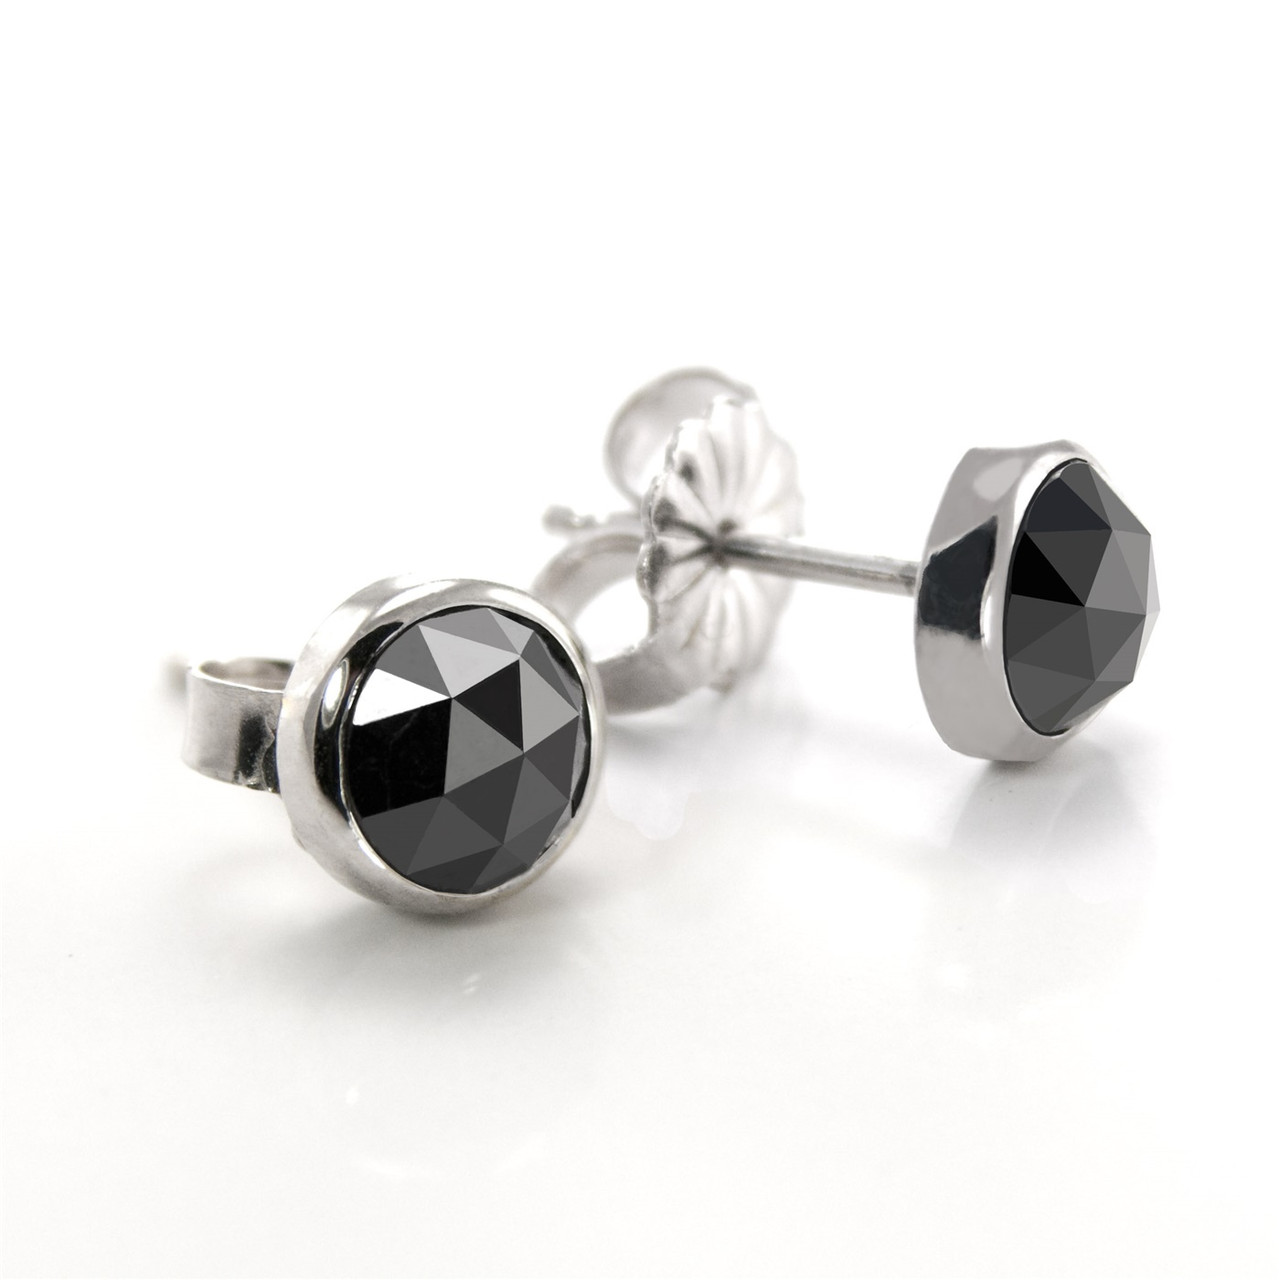 Rose Cut Black Diamond Earrings set in 14K White Gold